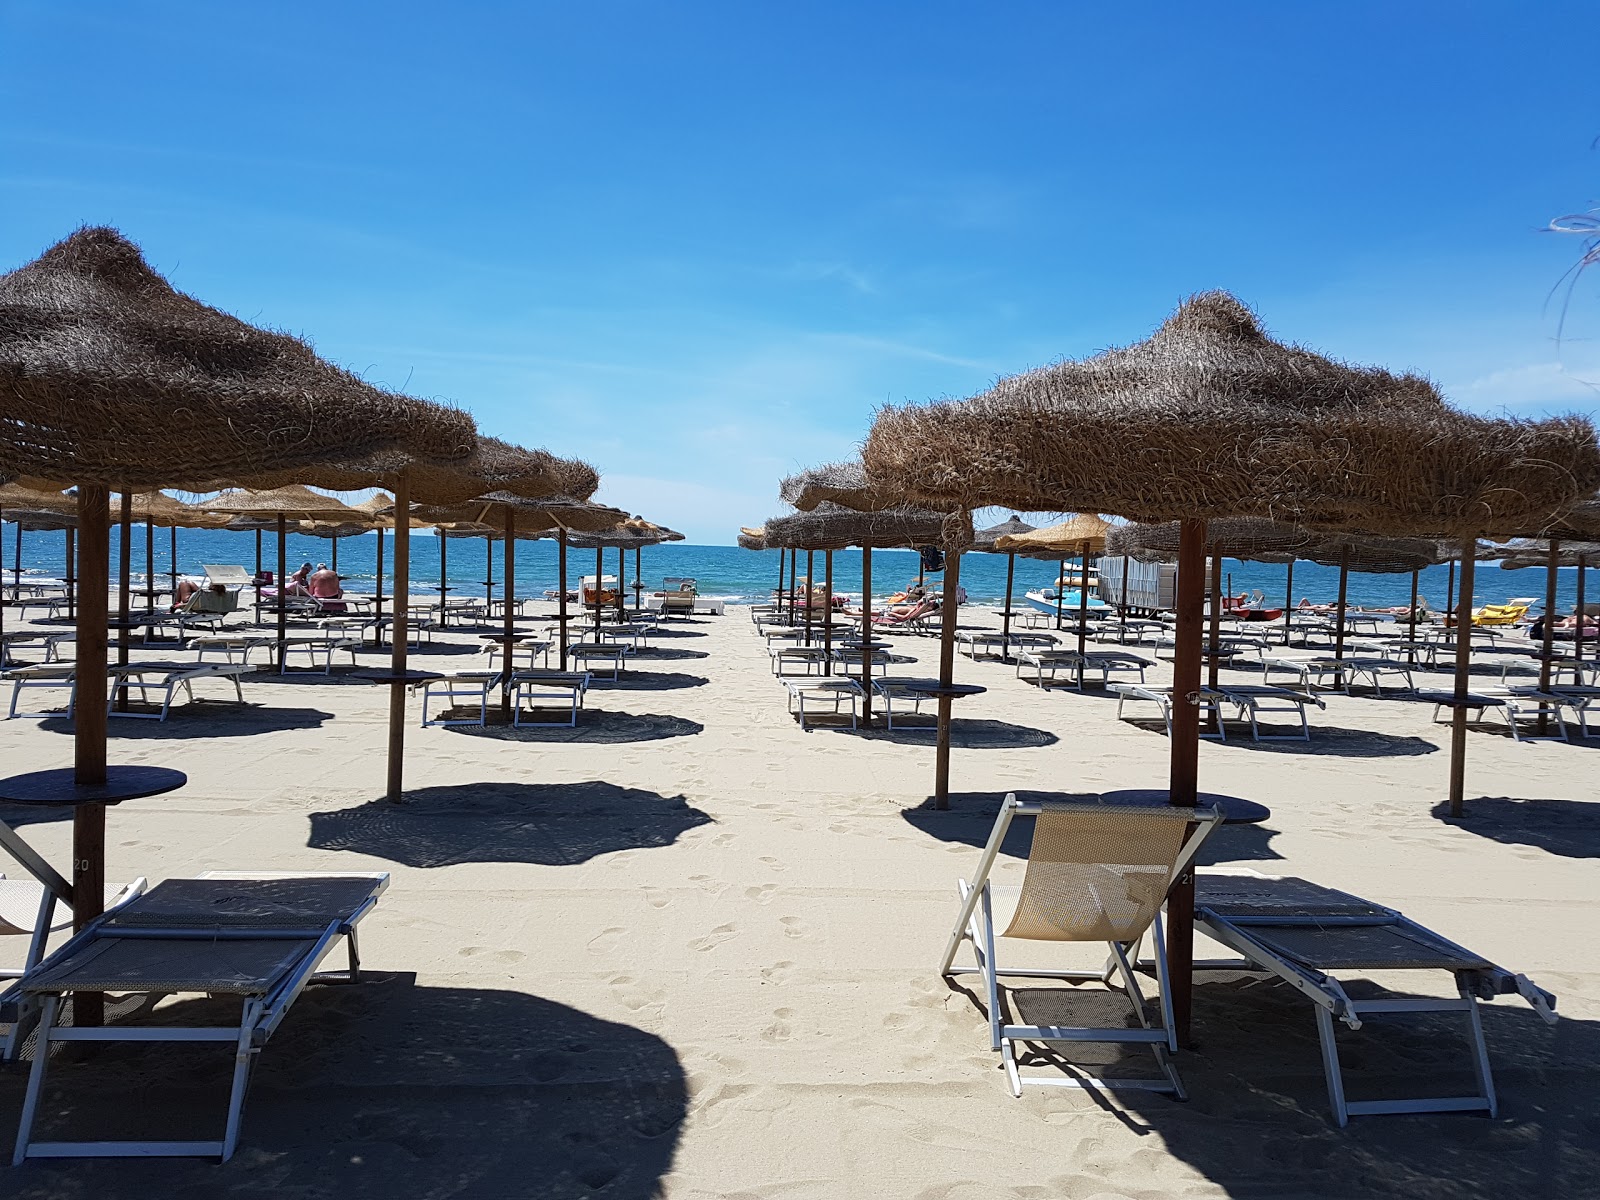 Foto af Spiaggia Libera Tirrenia - populært sted blandt afslapningskendere